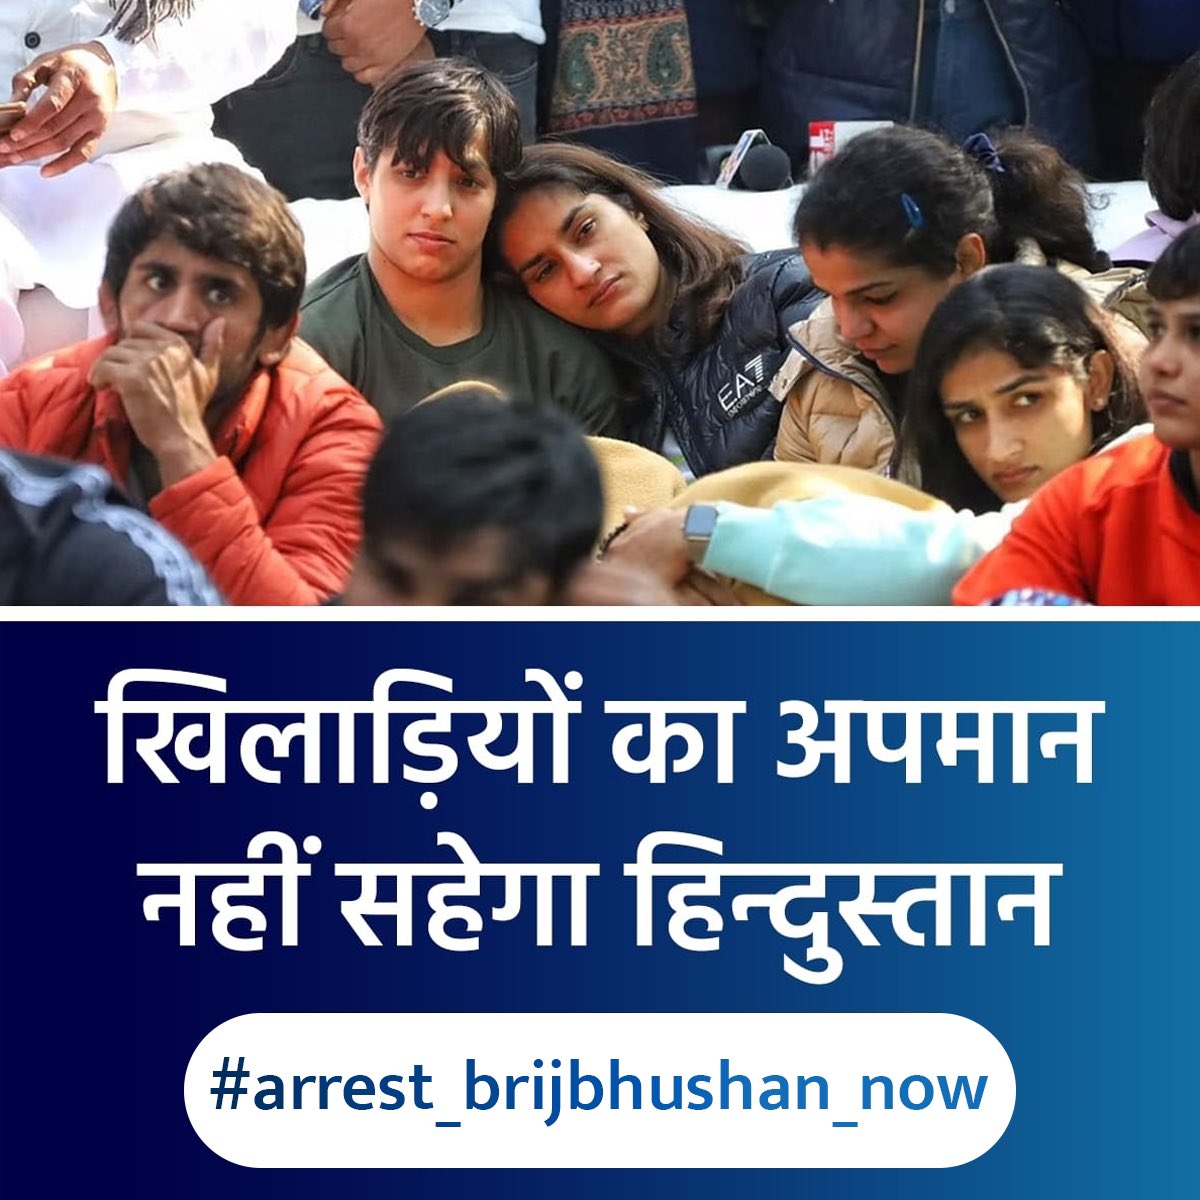 बेटियों के साथ अन्याय करने वालों के लिए रहम की कोई गुंजाइश नहीं होनी चाहिए। चाहे पाप करने वाले का पद कितना ही बड़ा हो। 🙏🏽 #arrest_brijbhushan_now